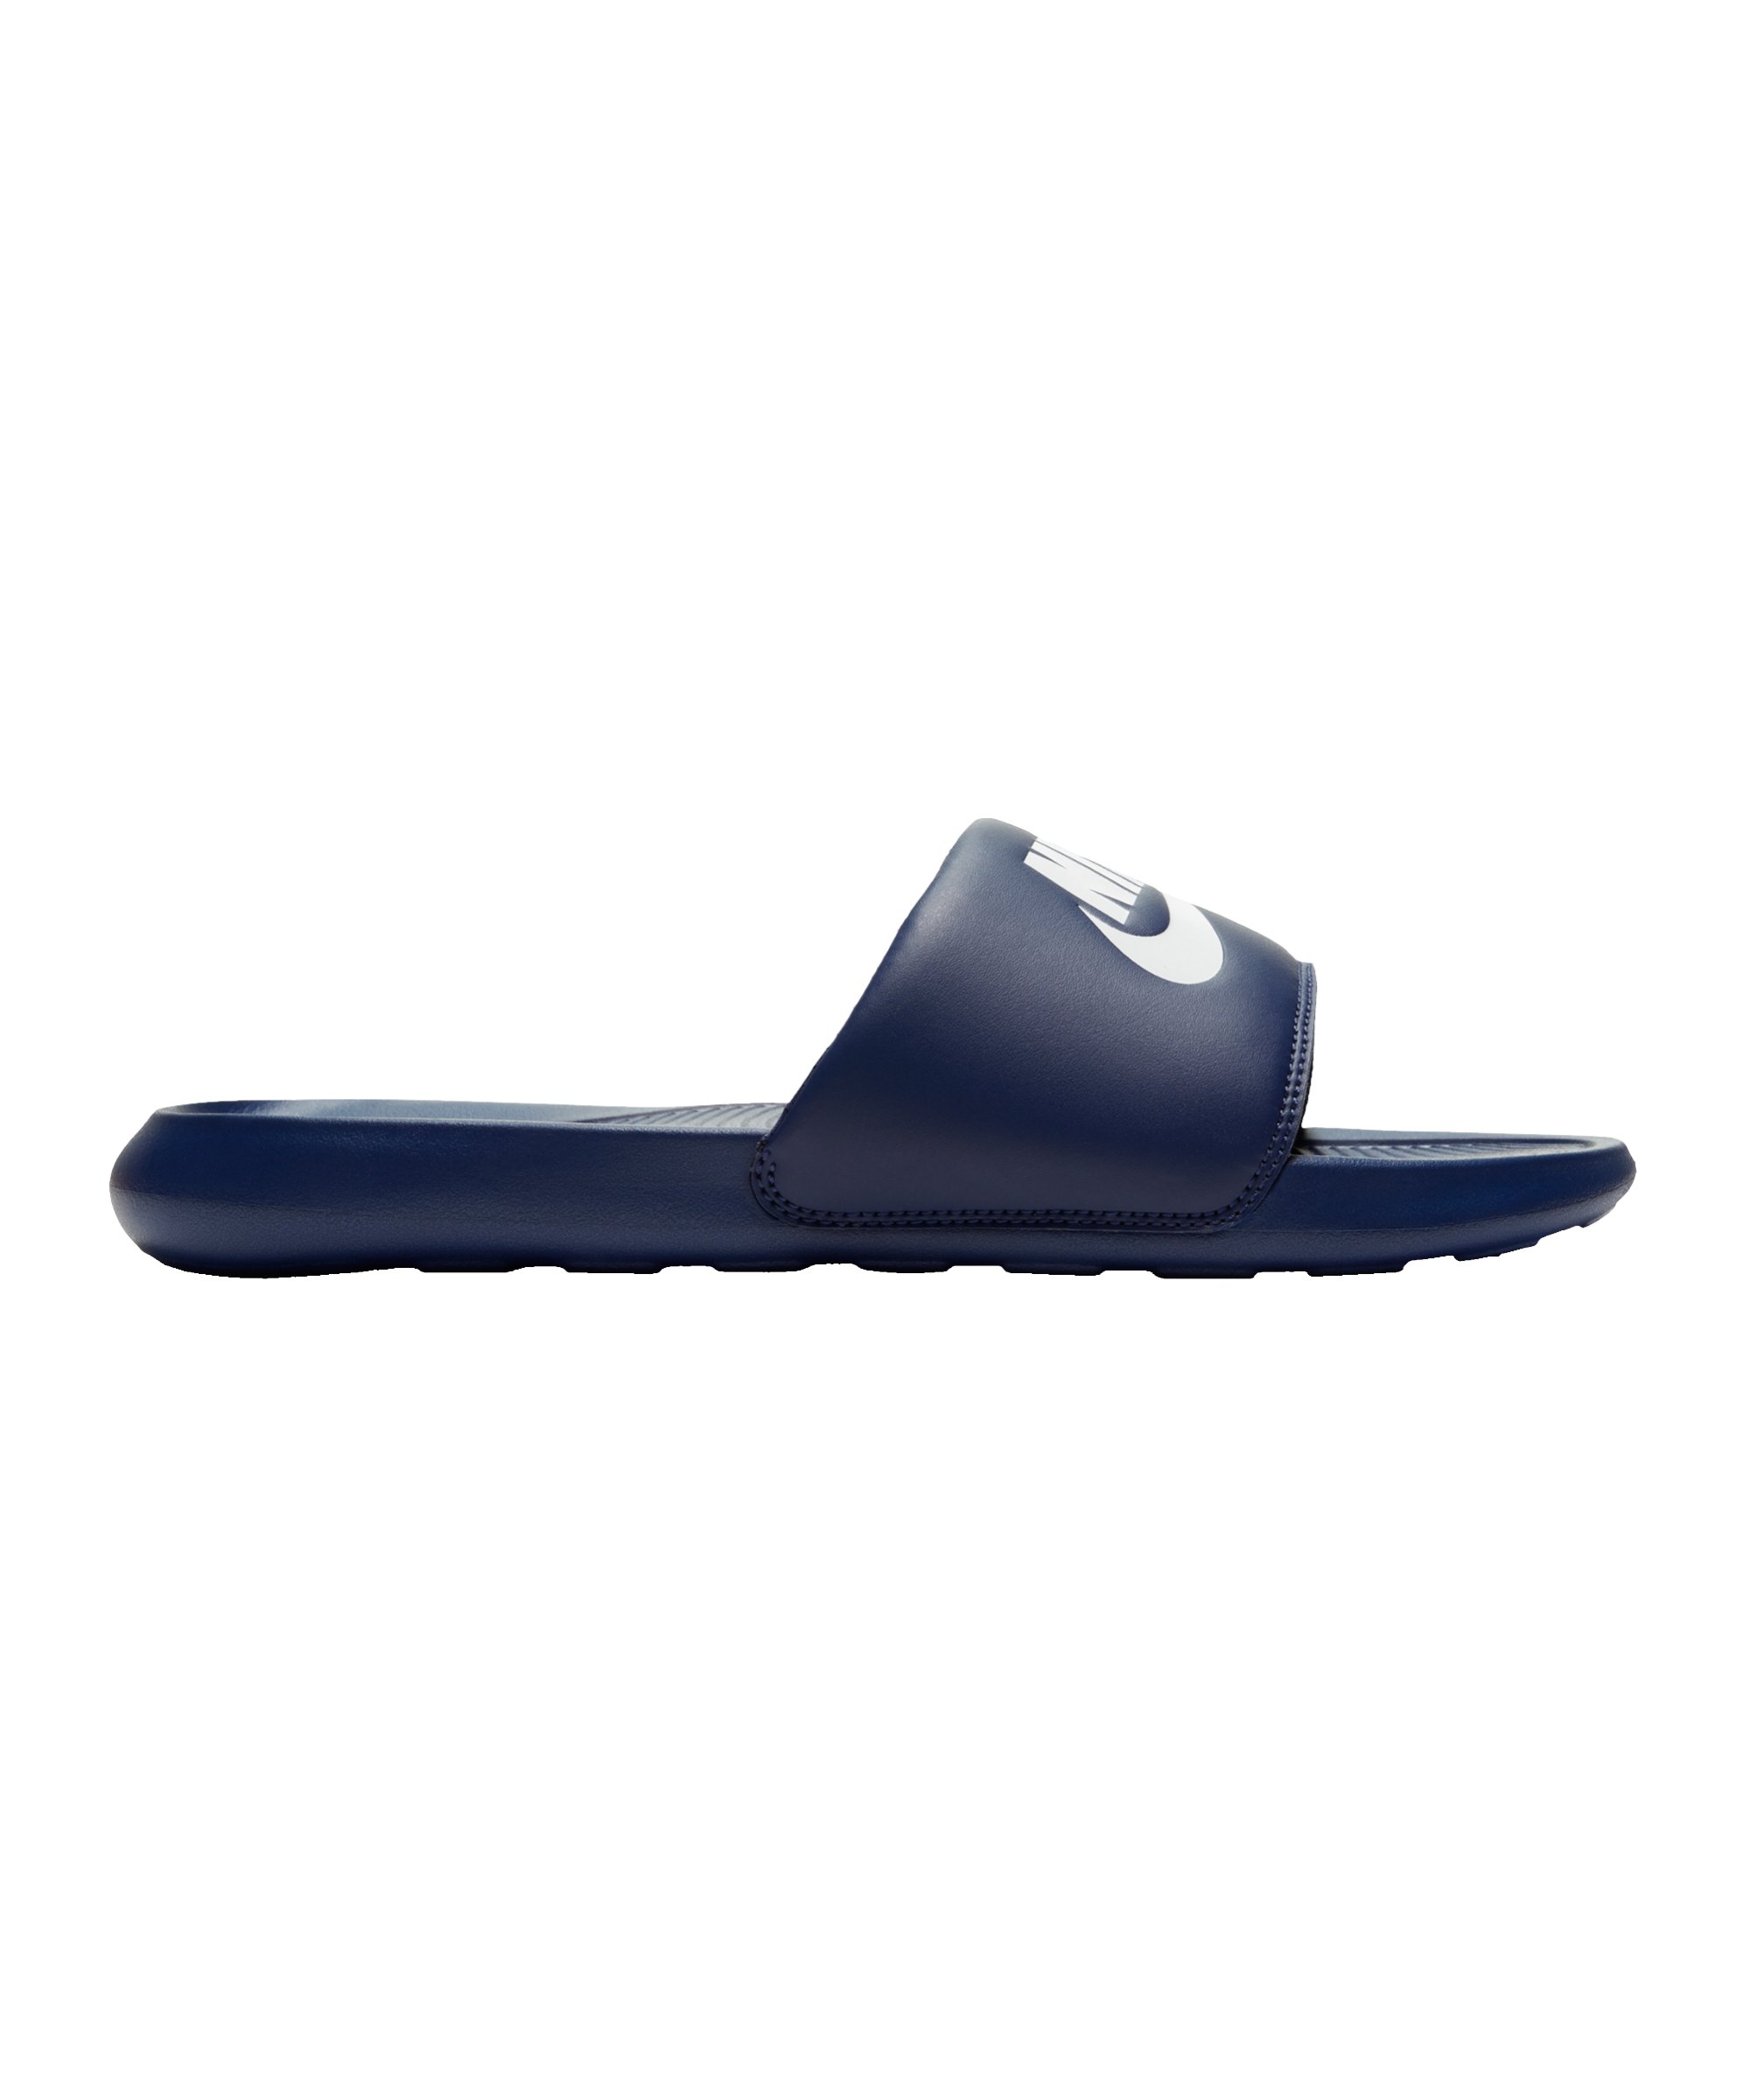 Nike Victori One Slide Badelatsche Blau F401 - blau